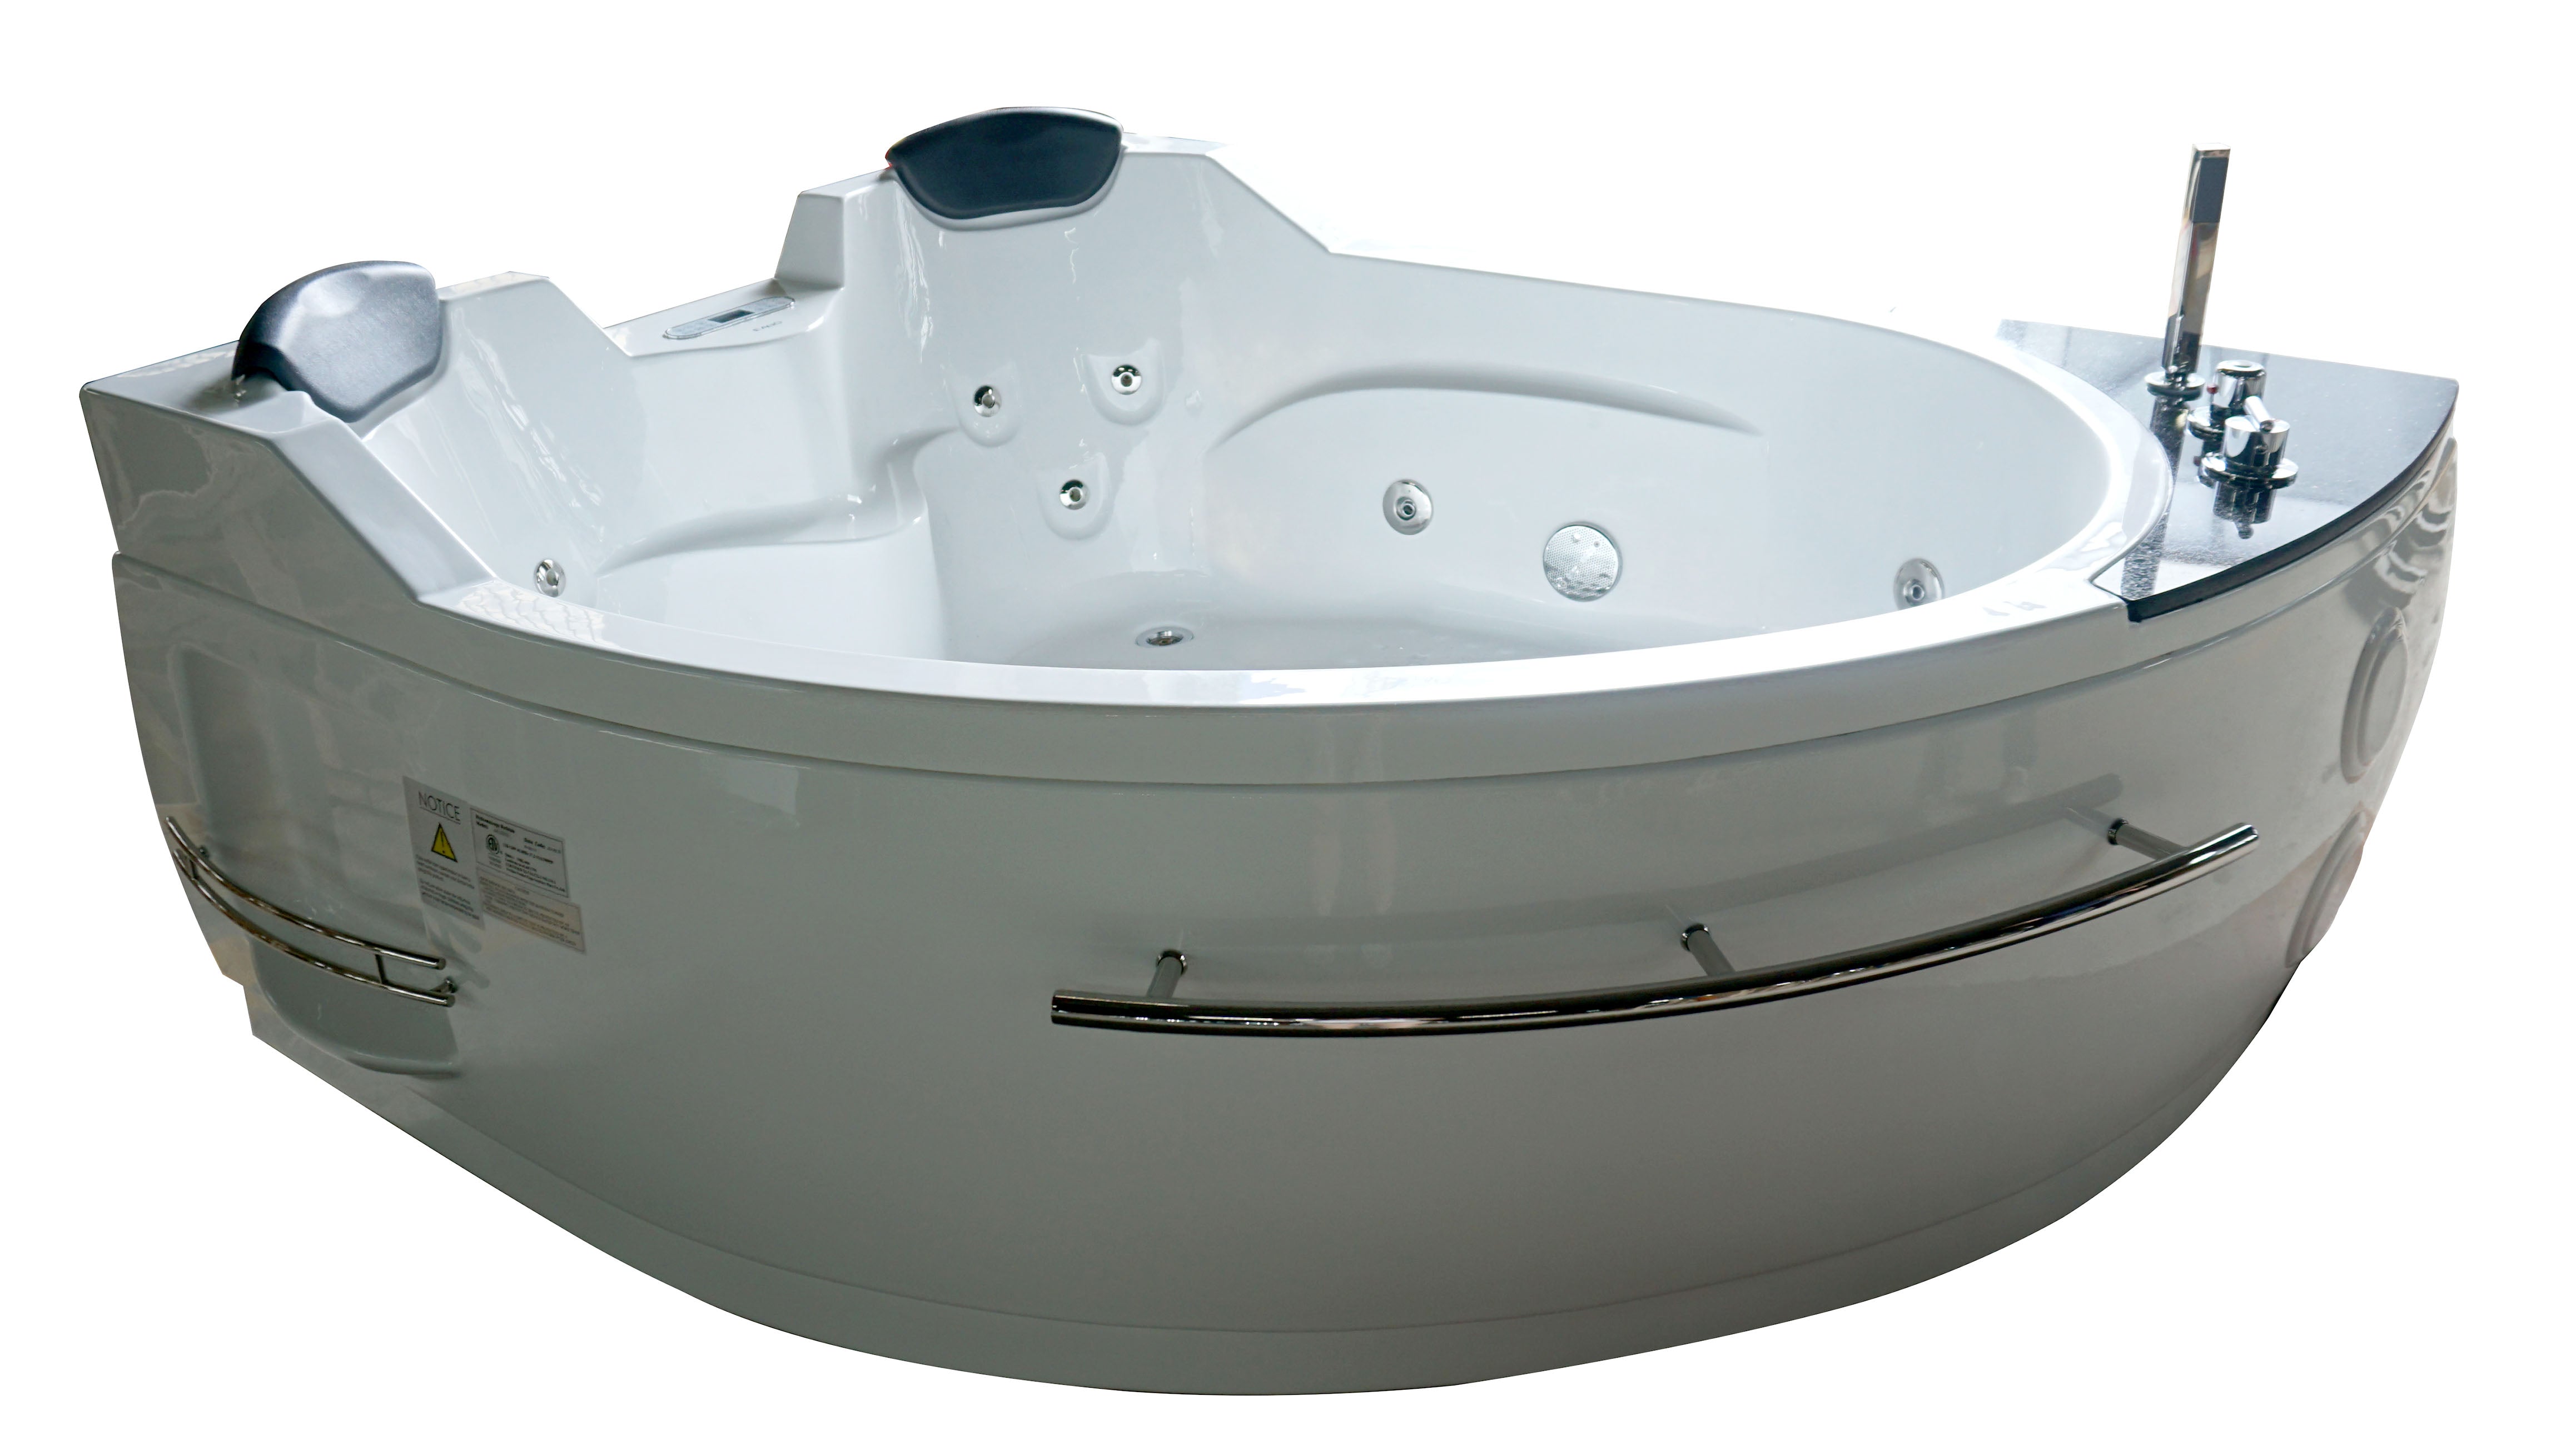 EAGO AM113ETL Corner Whirlpool Bathtub Acrylic White